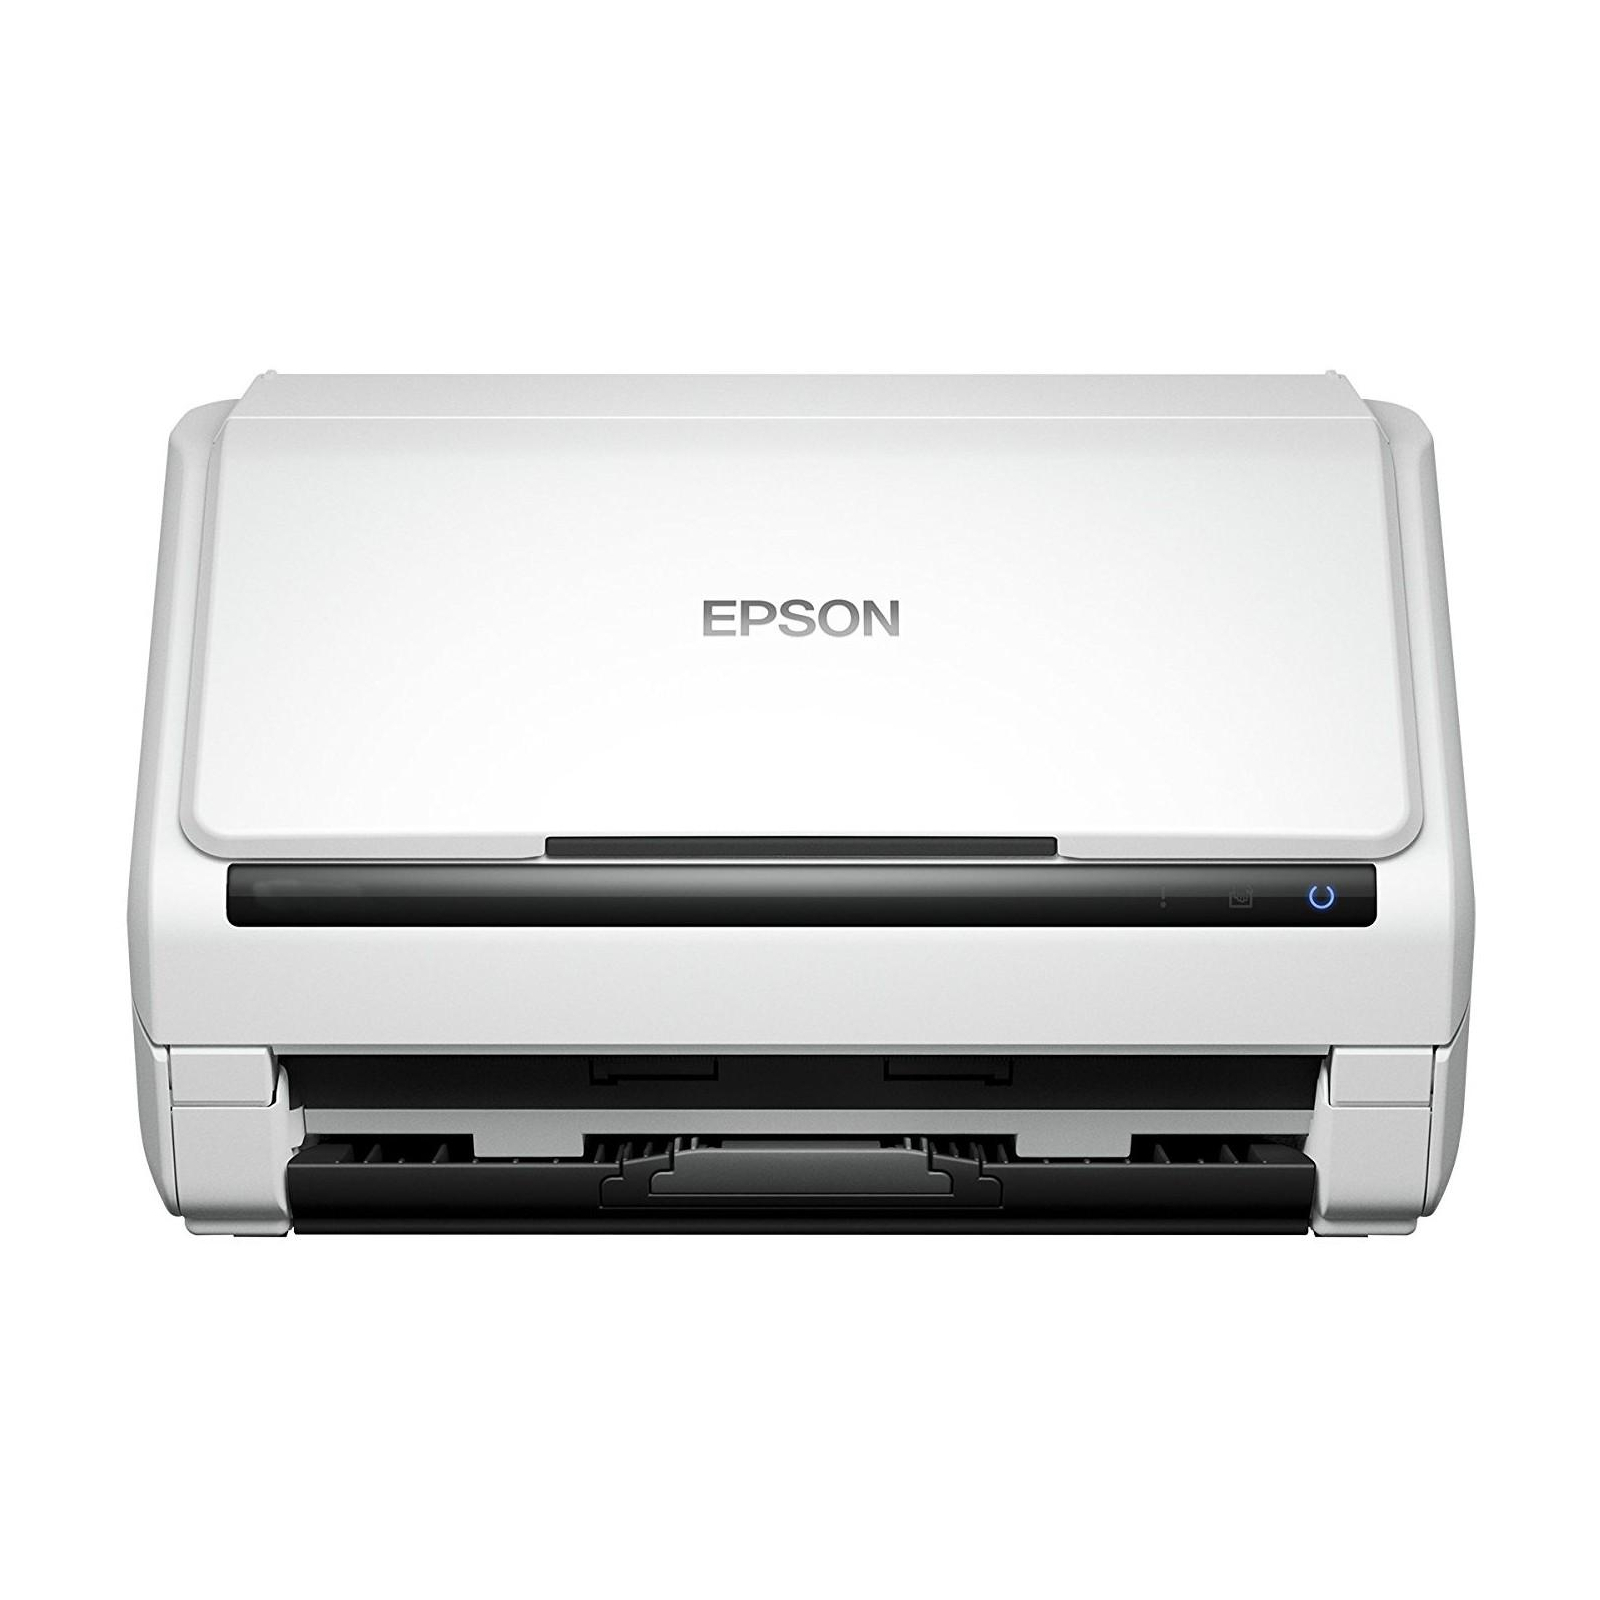 Сканер Epson WorkForce DS-530N (B11B226401BT)